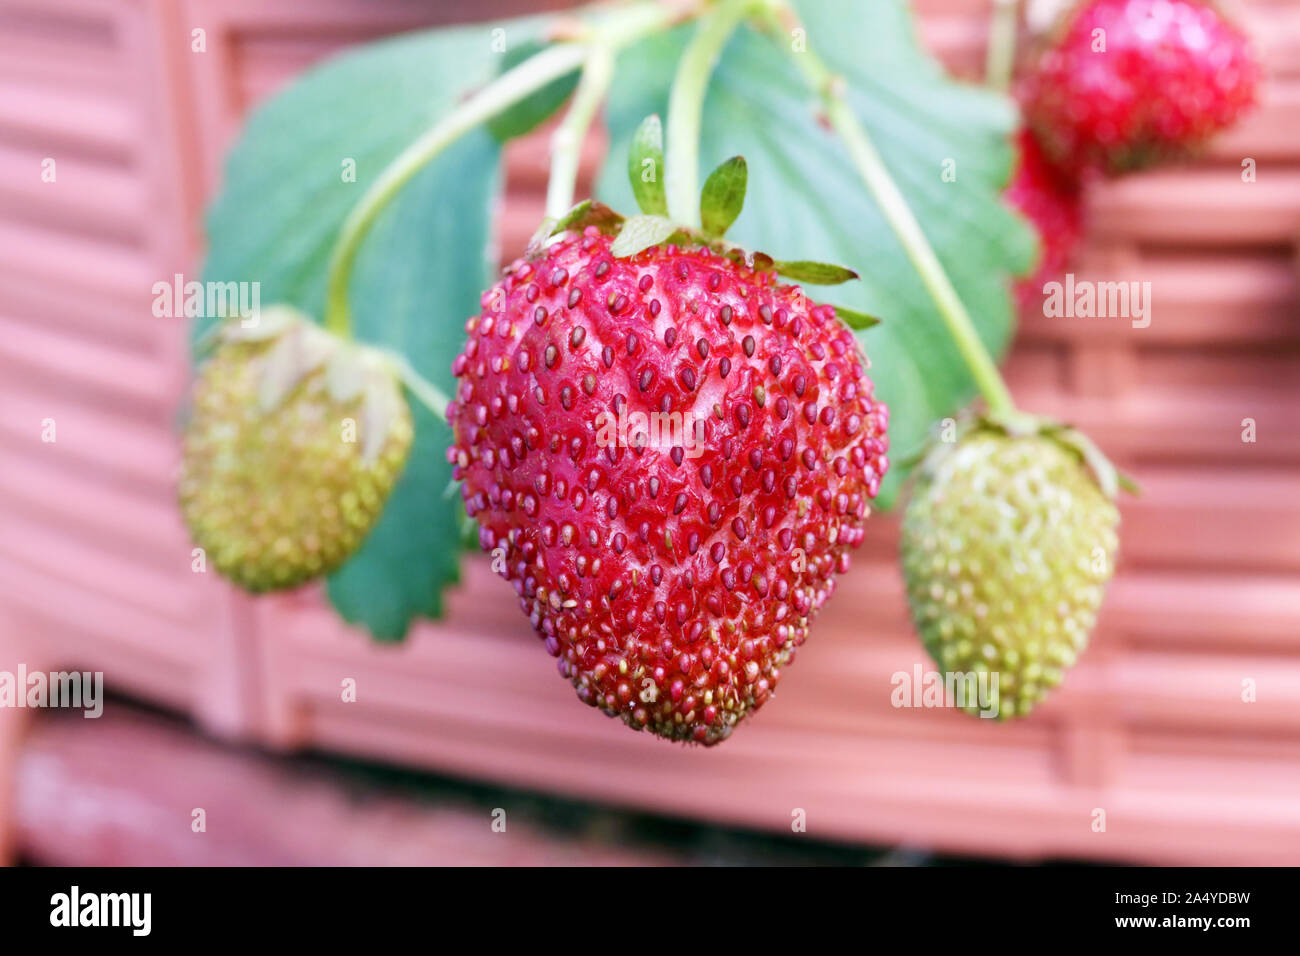 Reife Erdbeere berry hängt eine Zweigniederlassung, die in einem Gewächshaus. Foto Weichzeichner Technik für das Bild verwendet Stockfoto